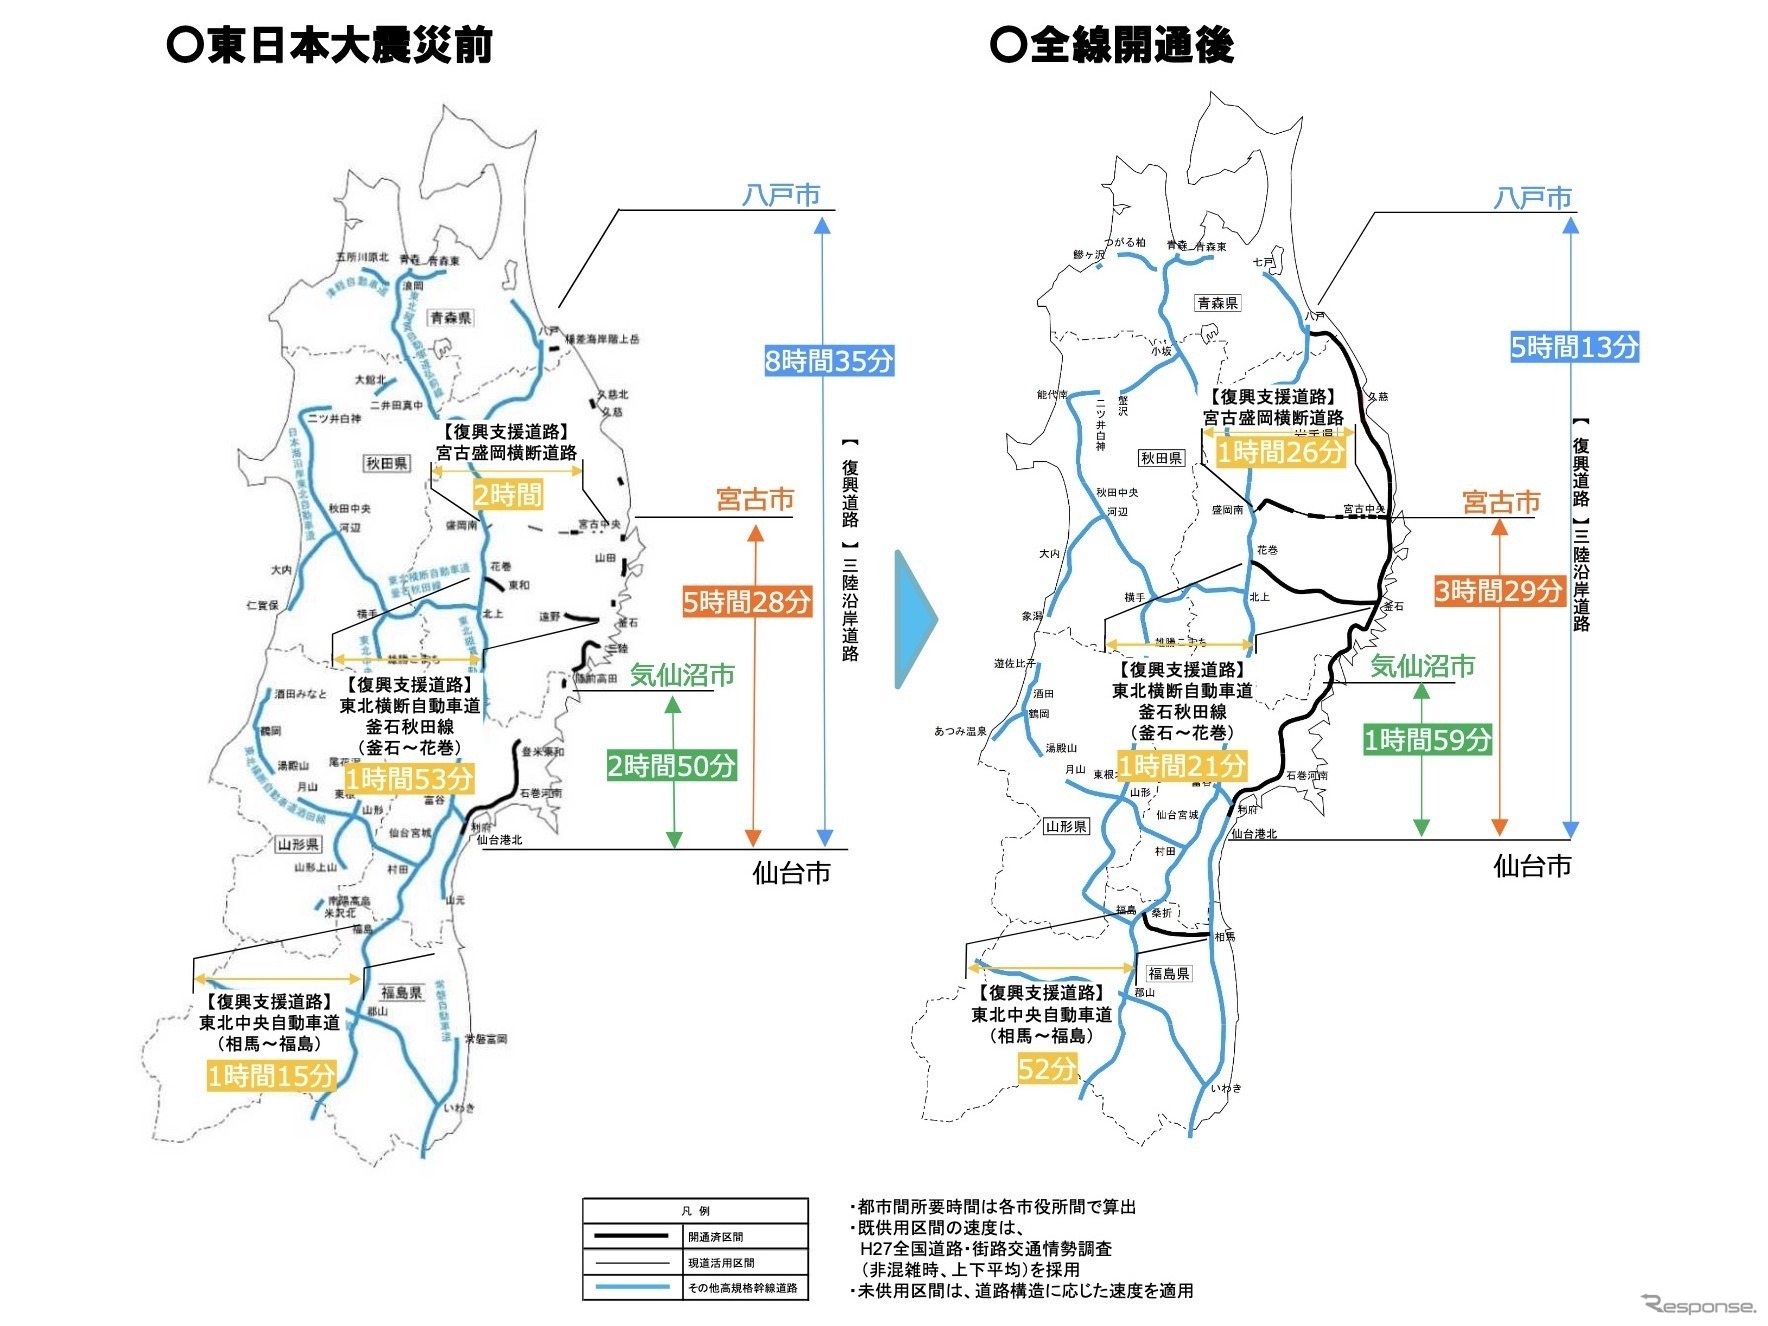 東日本大震災に復興道路・復興支援道路の概要